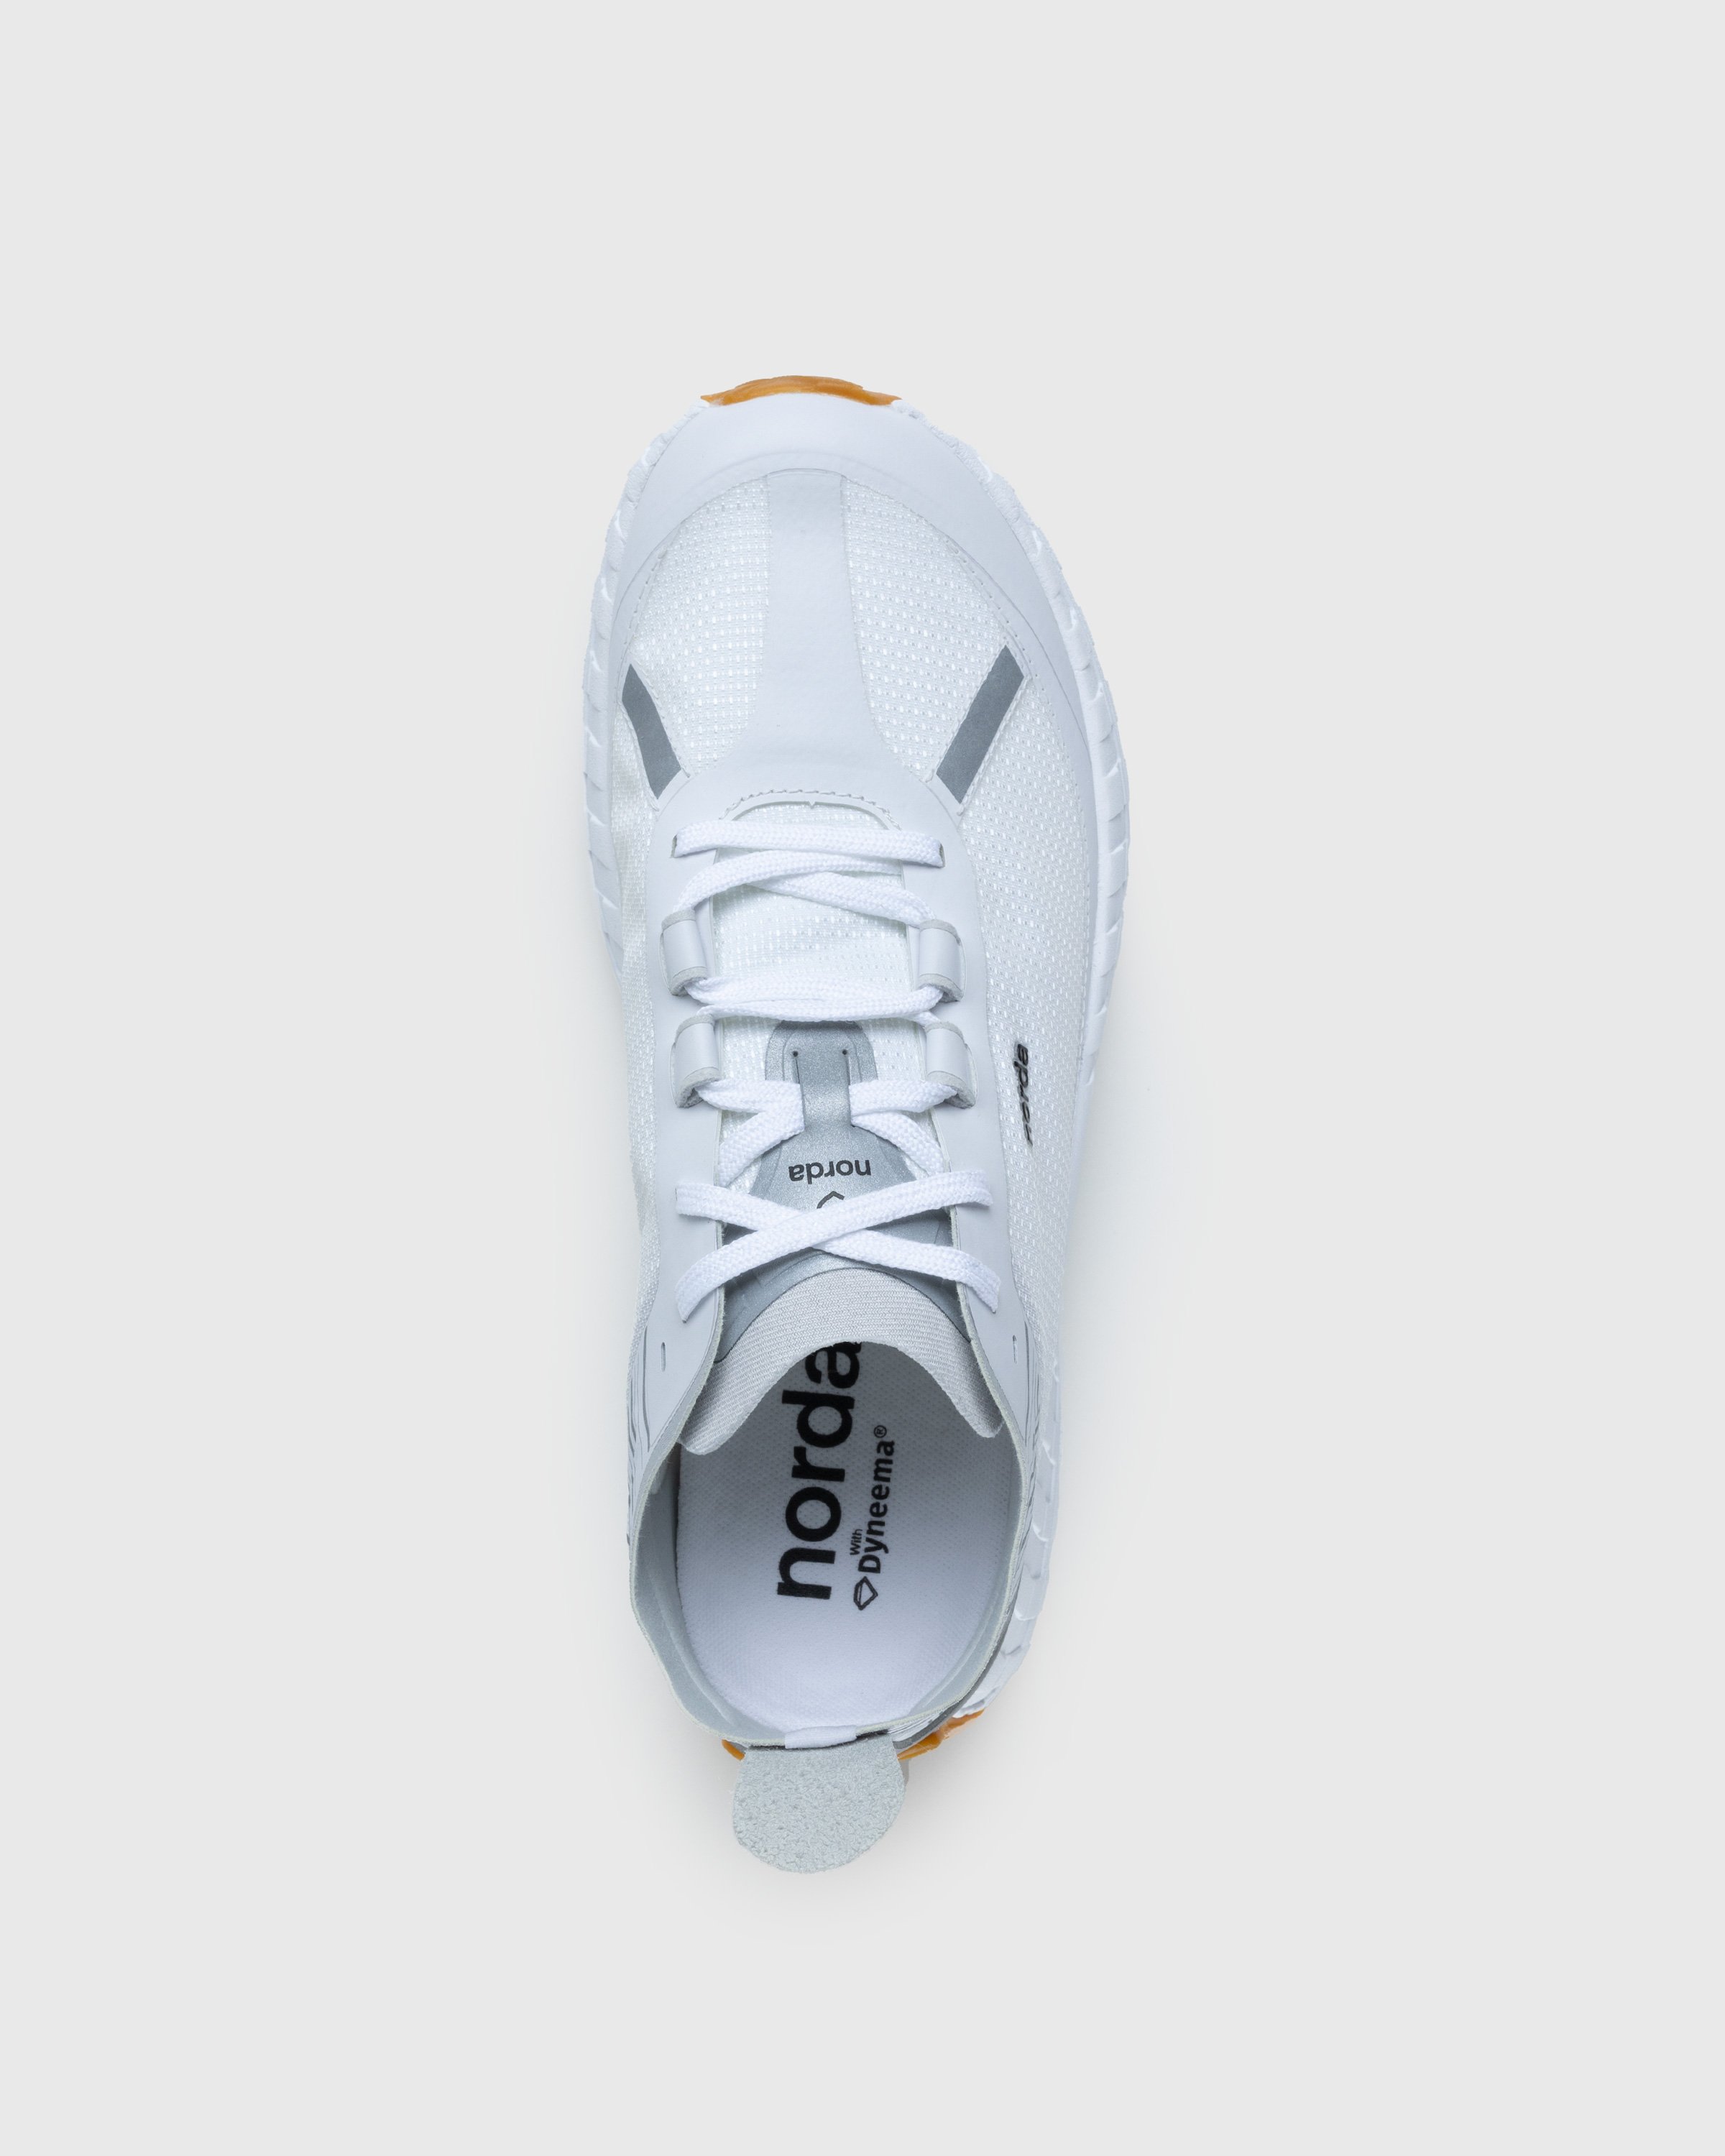 Norda - 001 W White/Gum - Footwear - White - Image 5